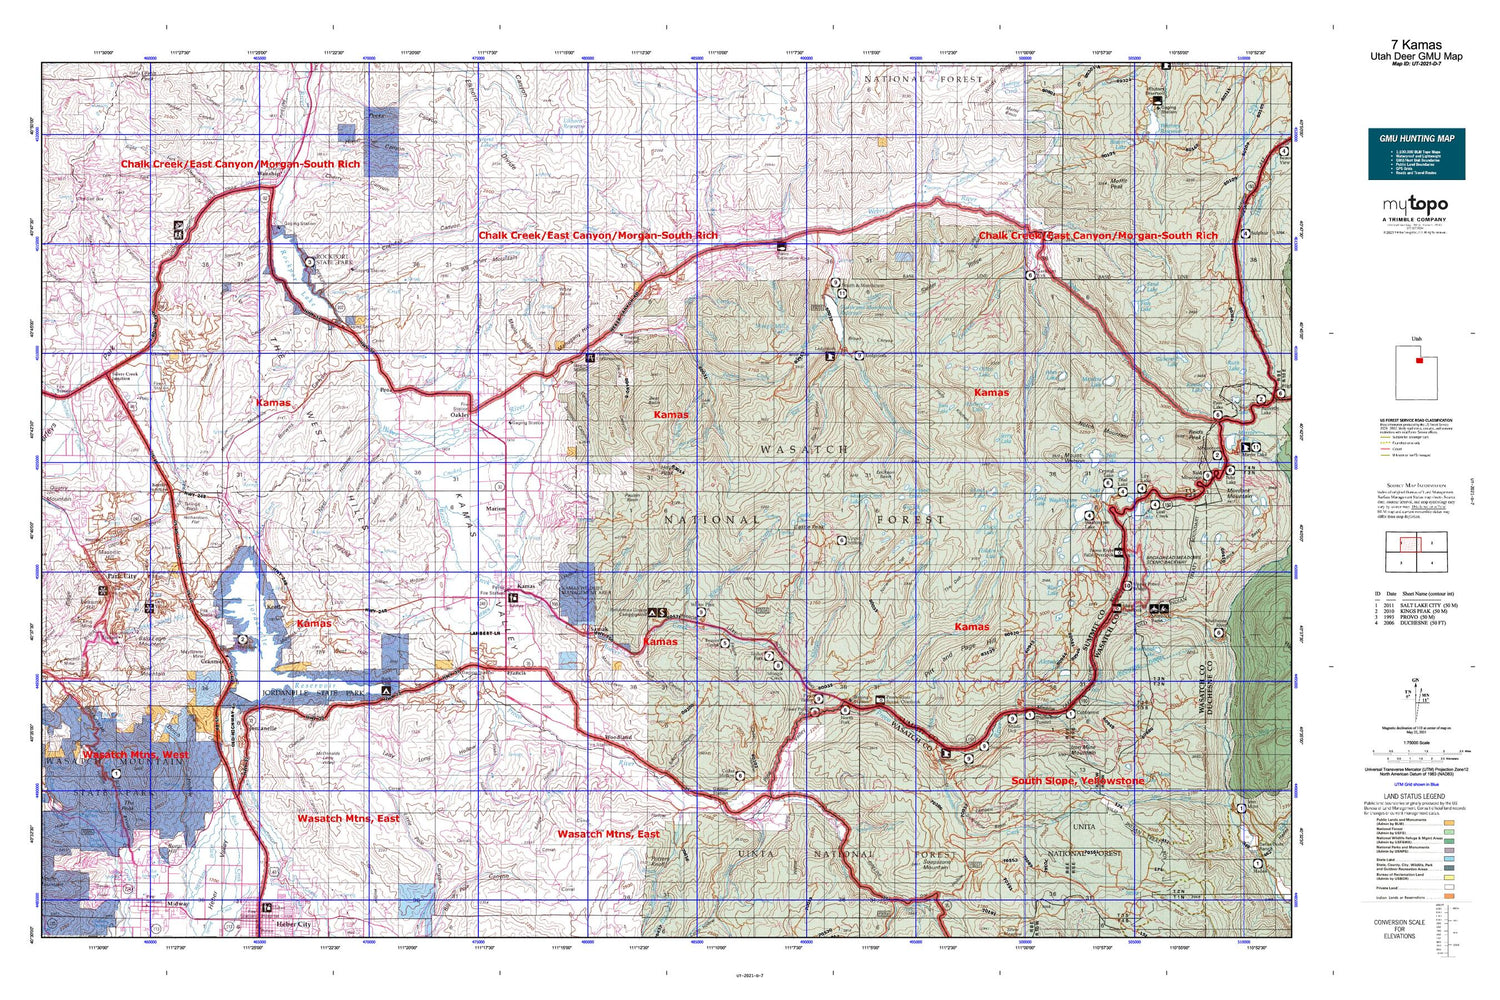 Utah Deer GMU 7 Kamas Map Image